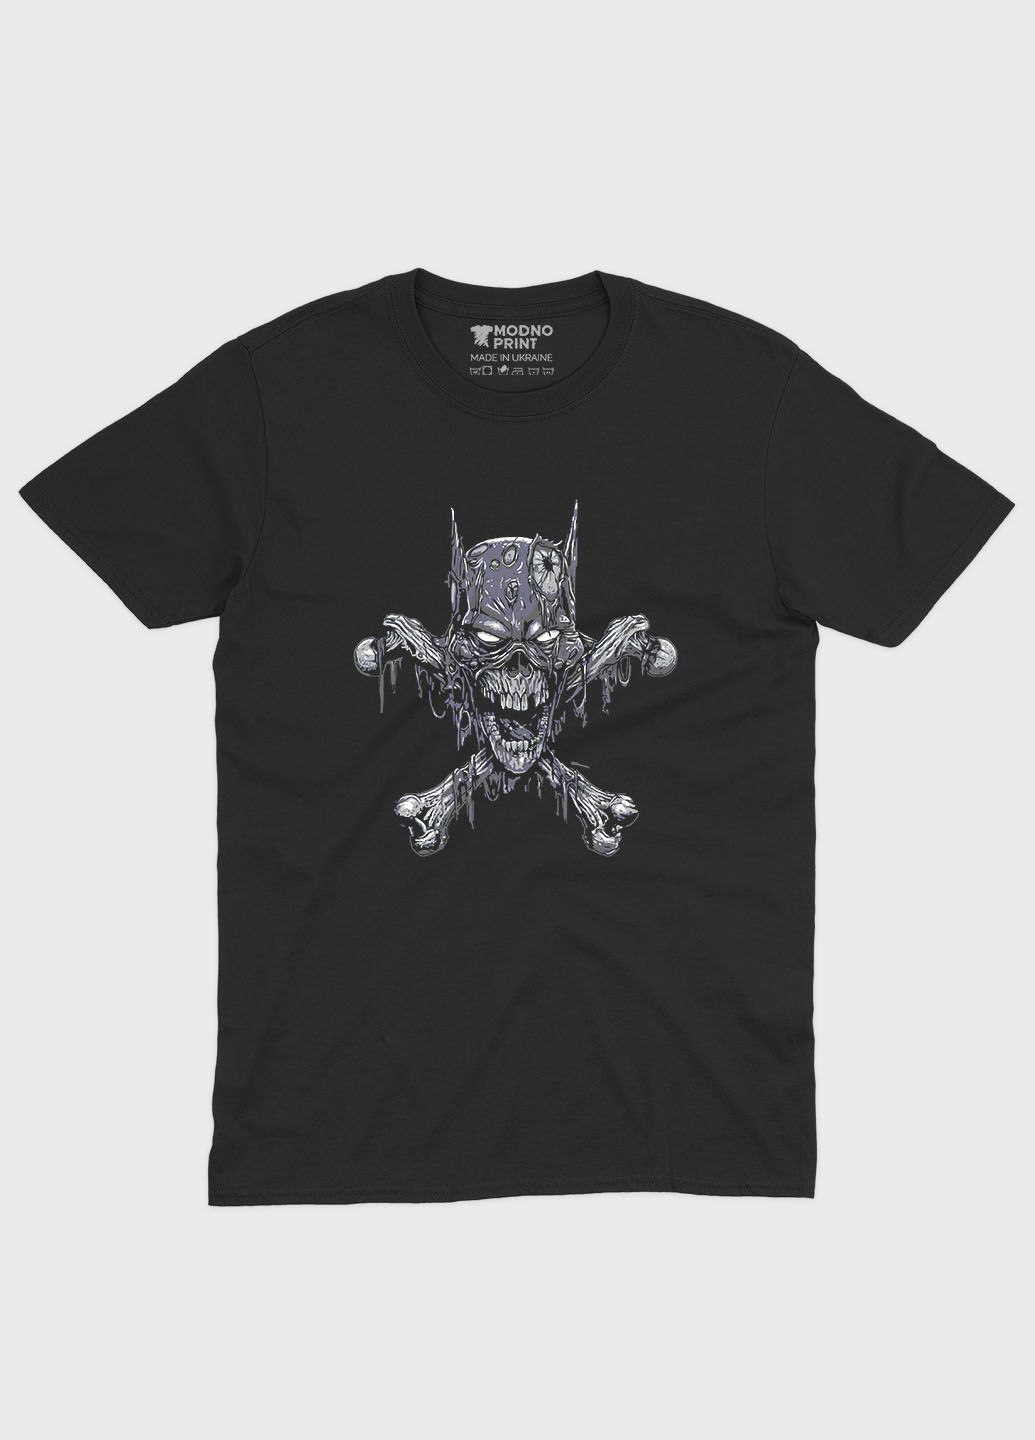 Черная летняя мужская футболка с принтом супергероя - бэтмен (ts001-1-bl-006-003-025-f) Modno